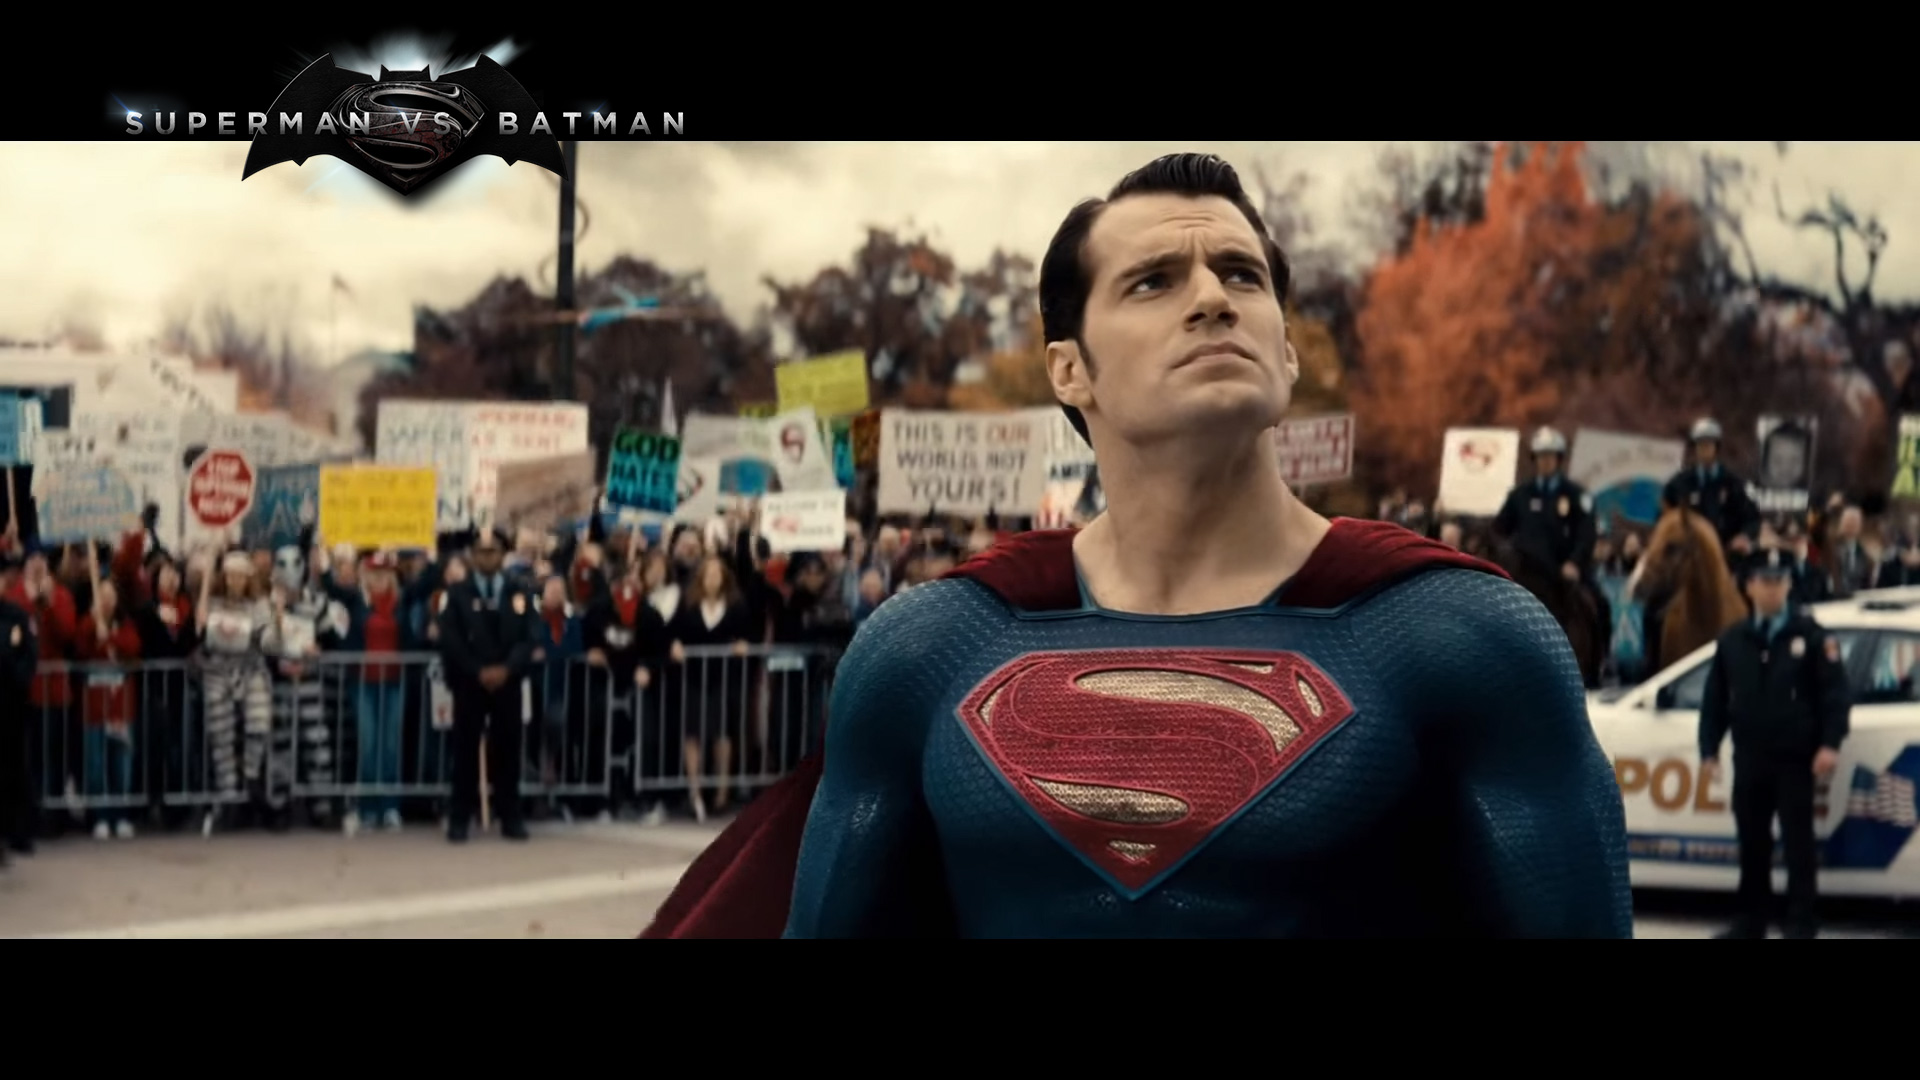 Batman Vs Superman Wallpaper HD 1080p Image